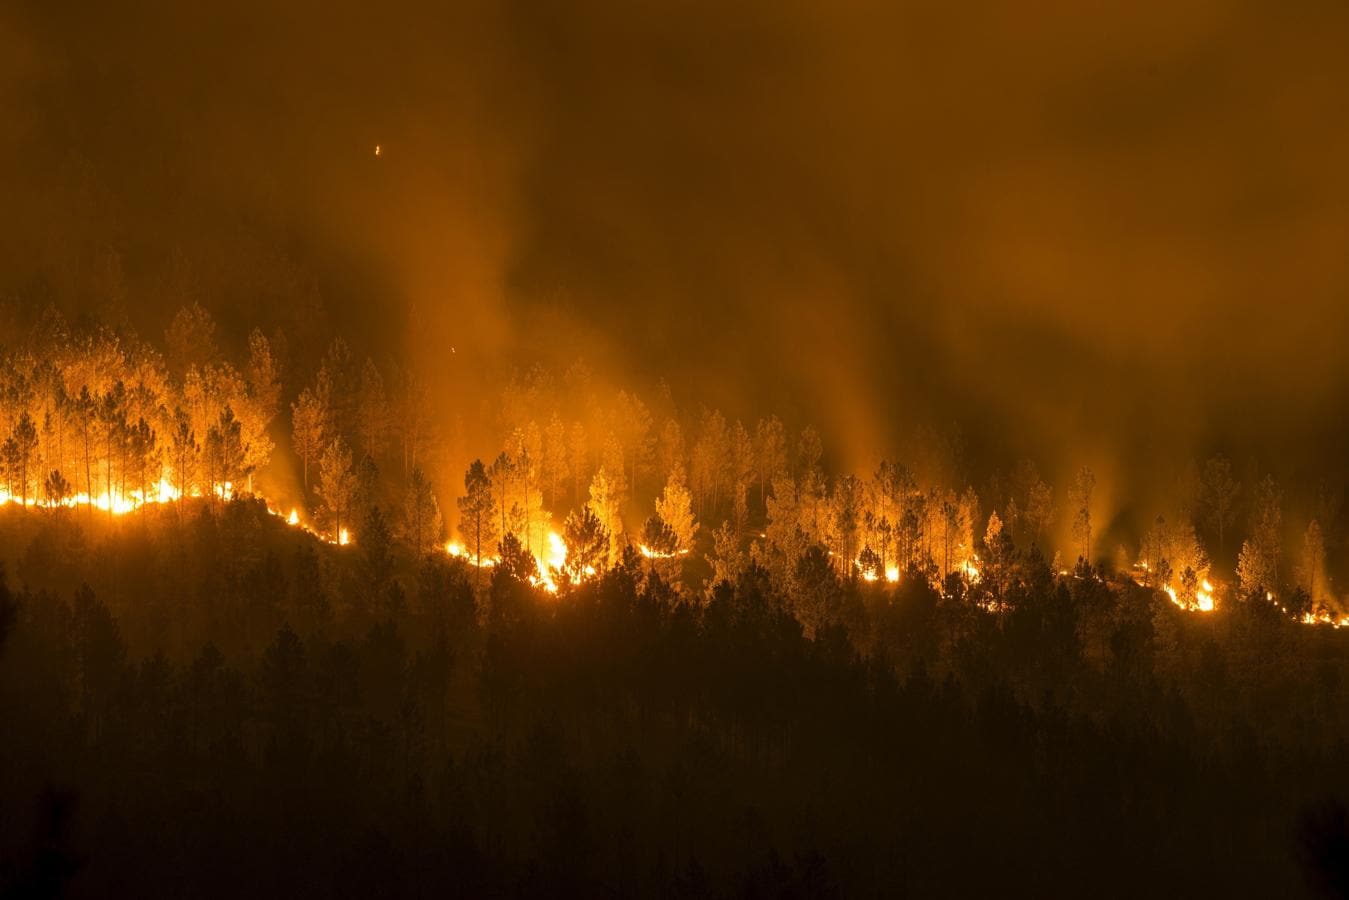 Vista del incendio forestal declarado en la localidad orensana de Entrimo, uno de los muchos incendios forestales sin control que han cercado casas, provocado desalojos y afectado a zonas de alto valor ecológico. 